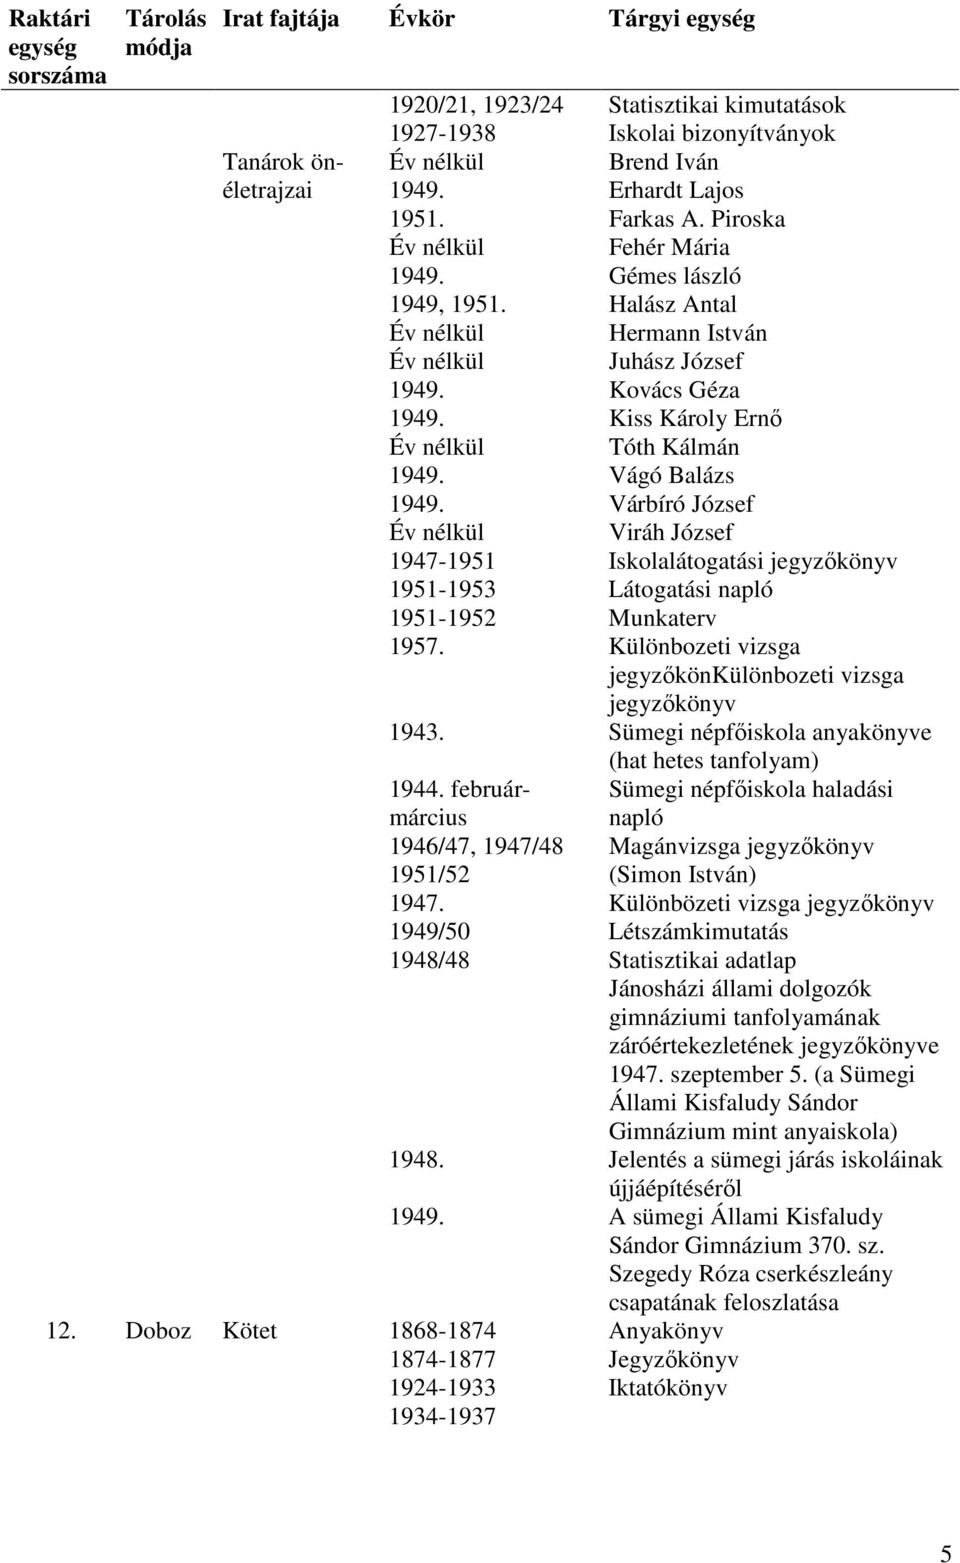 Munkaterv 1957. Különbozeti vizsga jegyzőkönkülönbozeti vizsga jegyzőkönyv 1943. Sümegi népfőiskola anyakönyve (hat hetes tanfolyam) 1944.